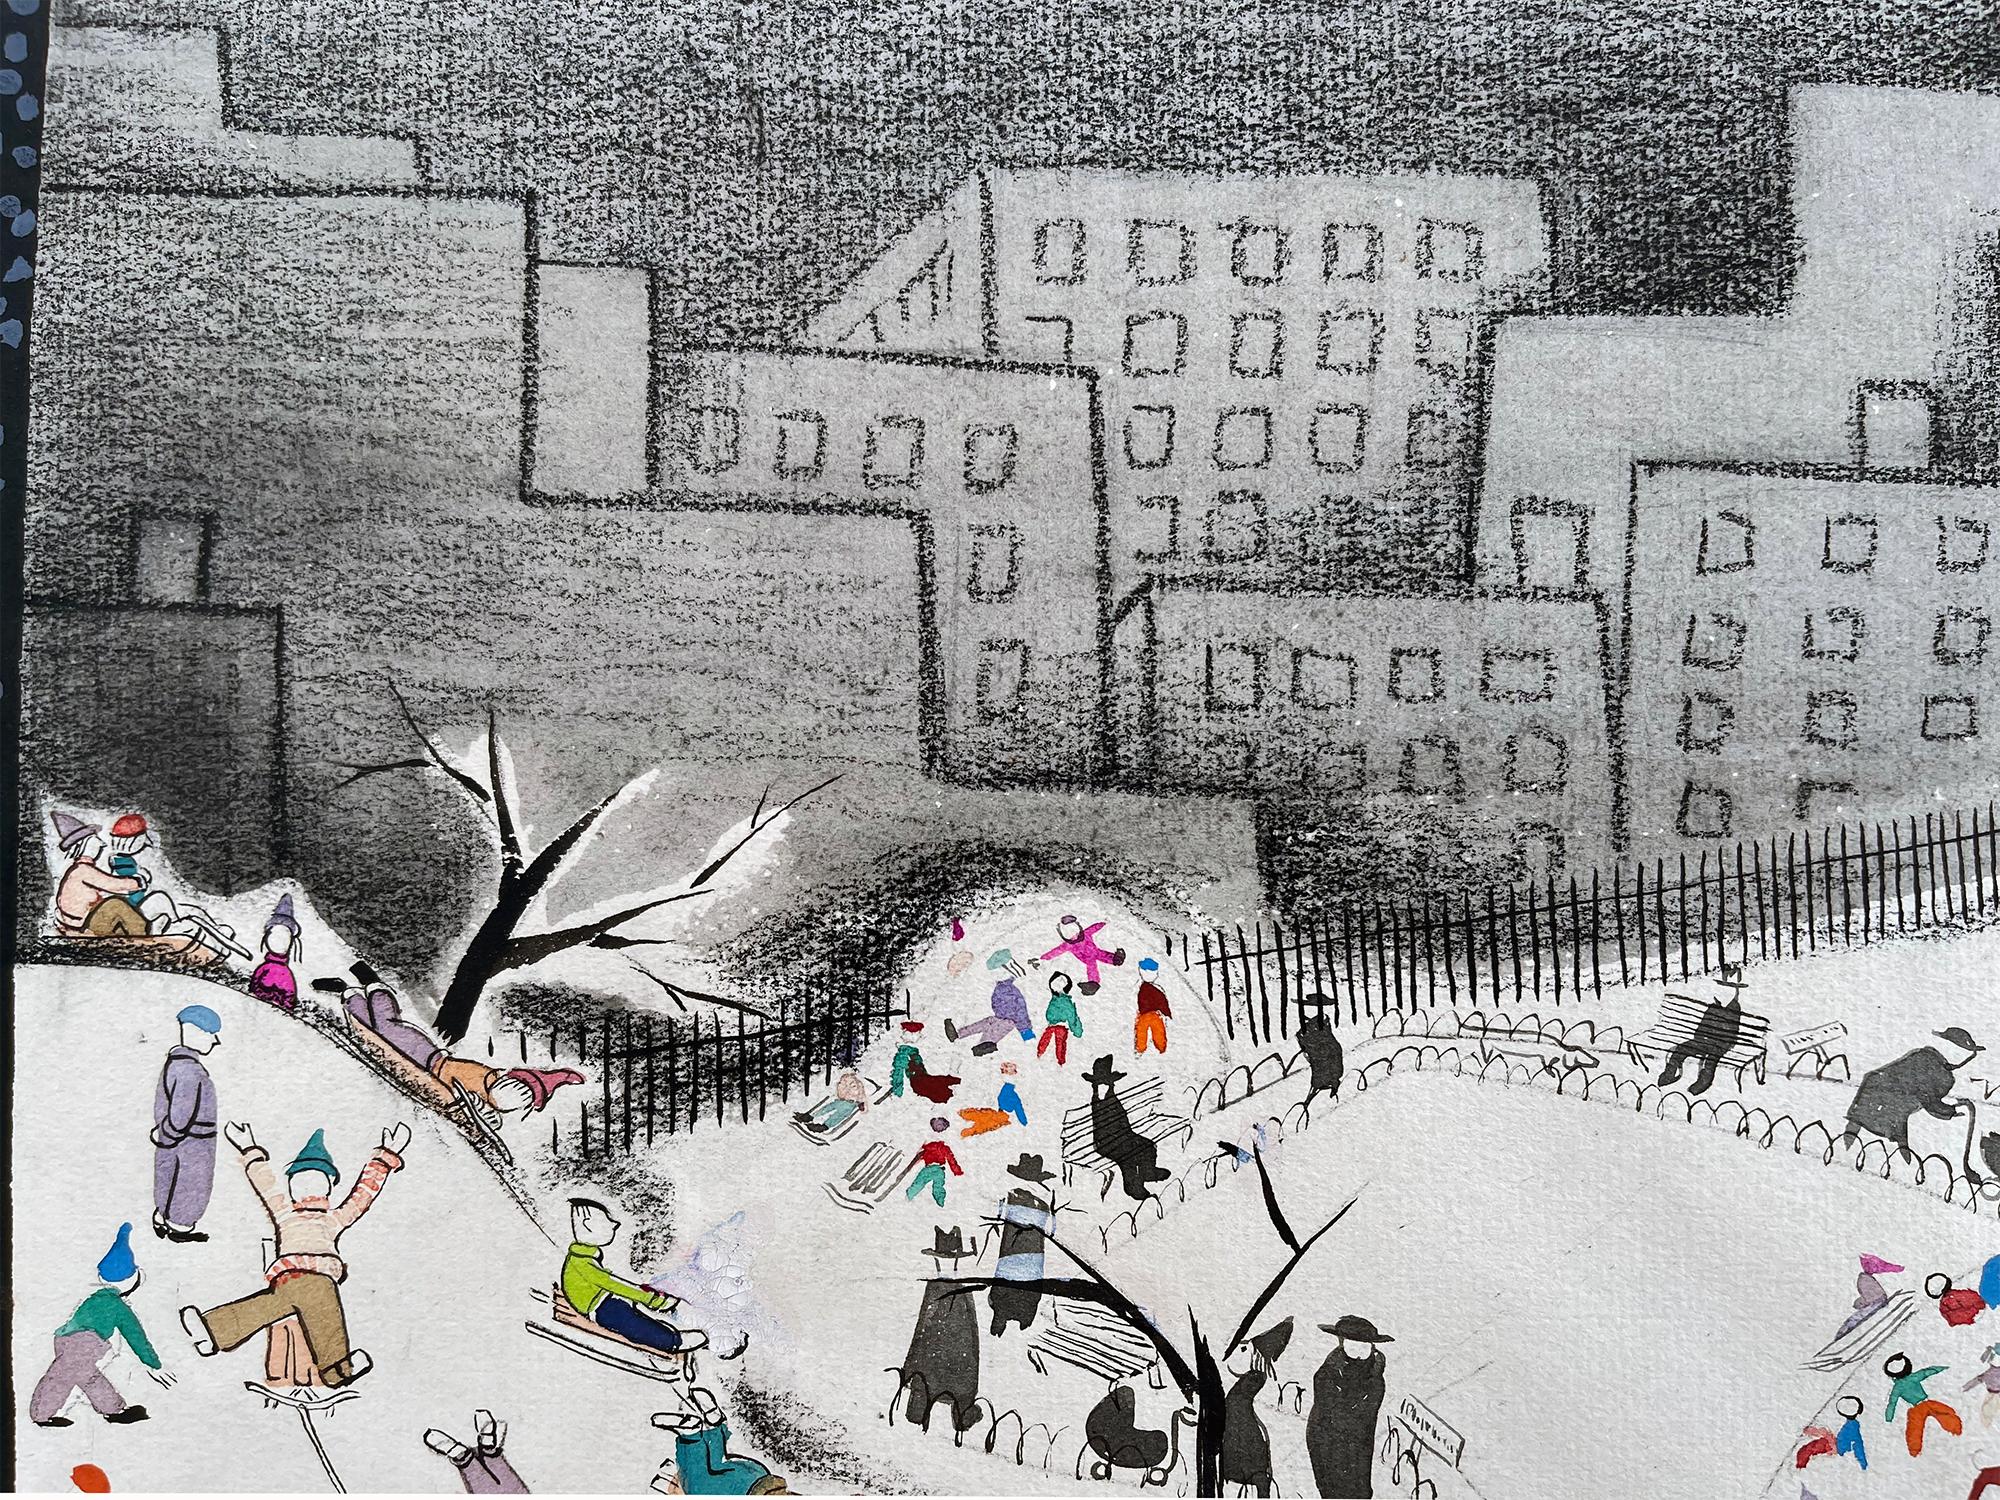 Der ungarische/amerikanische Künstler/Illustrator zeigt eine bezaubernde Szene vom Schlittenfahren im Schnee im Central Park. Das Werk ist abstrakt in seinem Design und funktional in seiner Erzählung - Unveröffentlichtes New Yorker Cover -